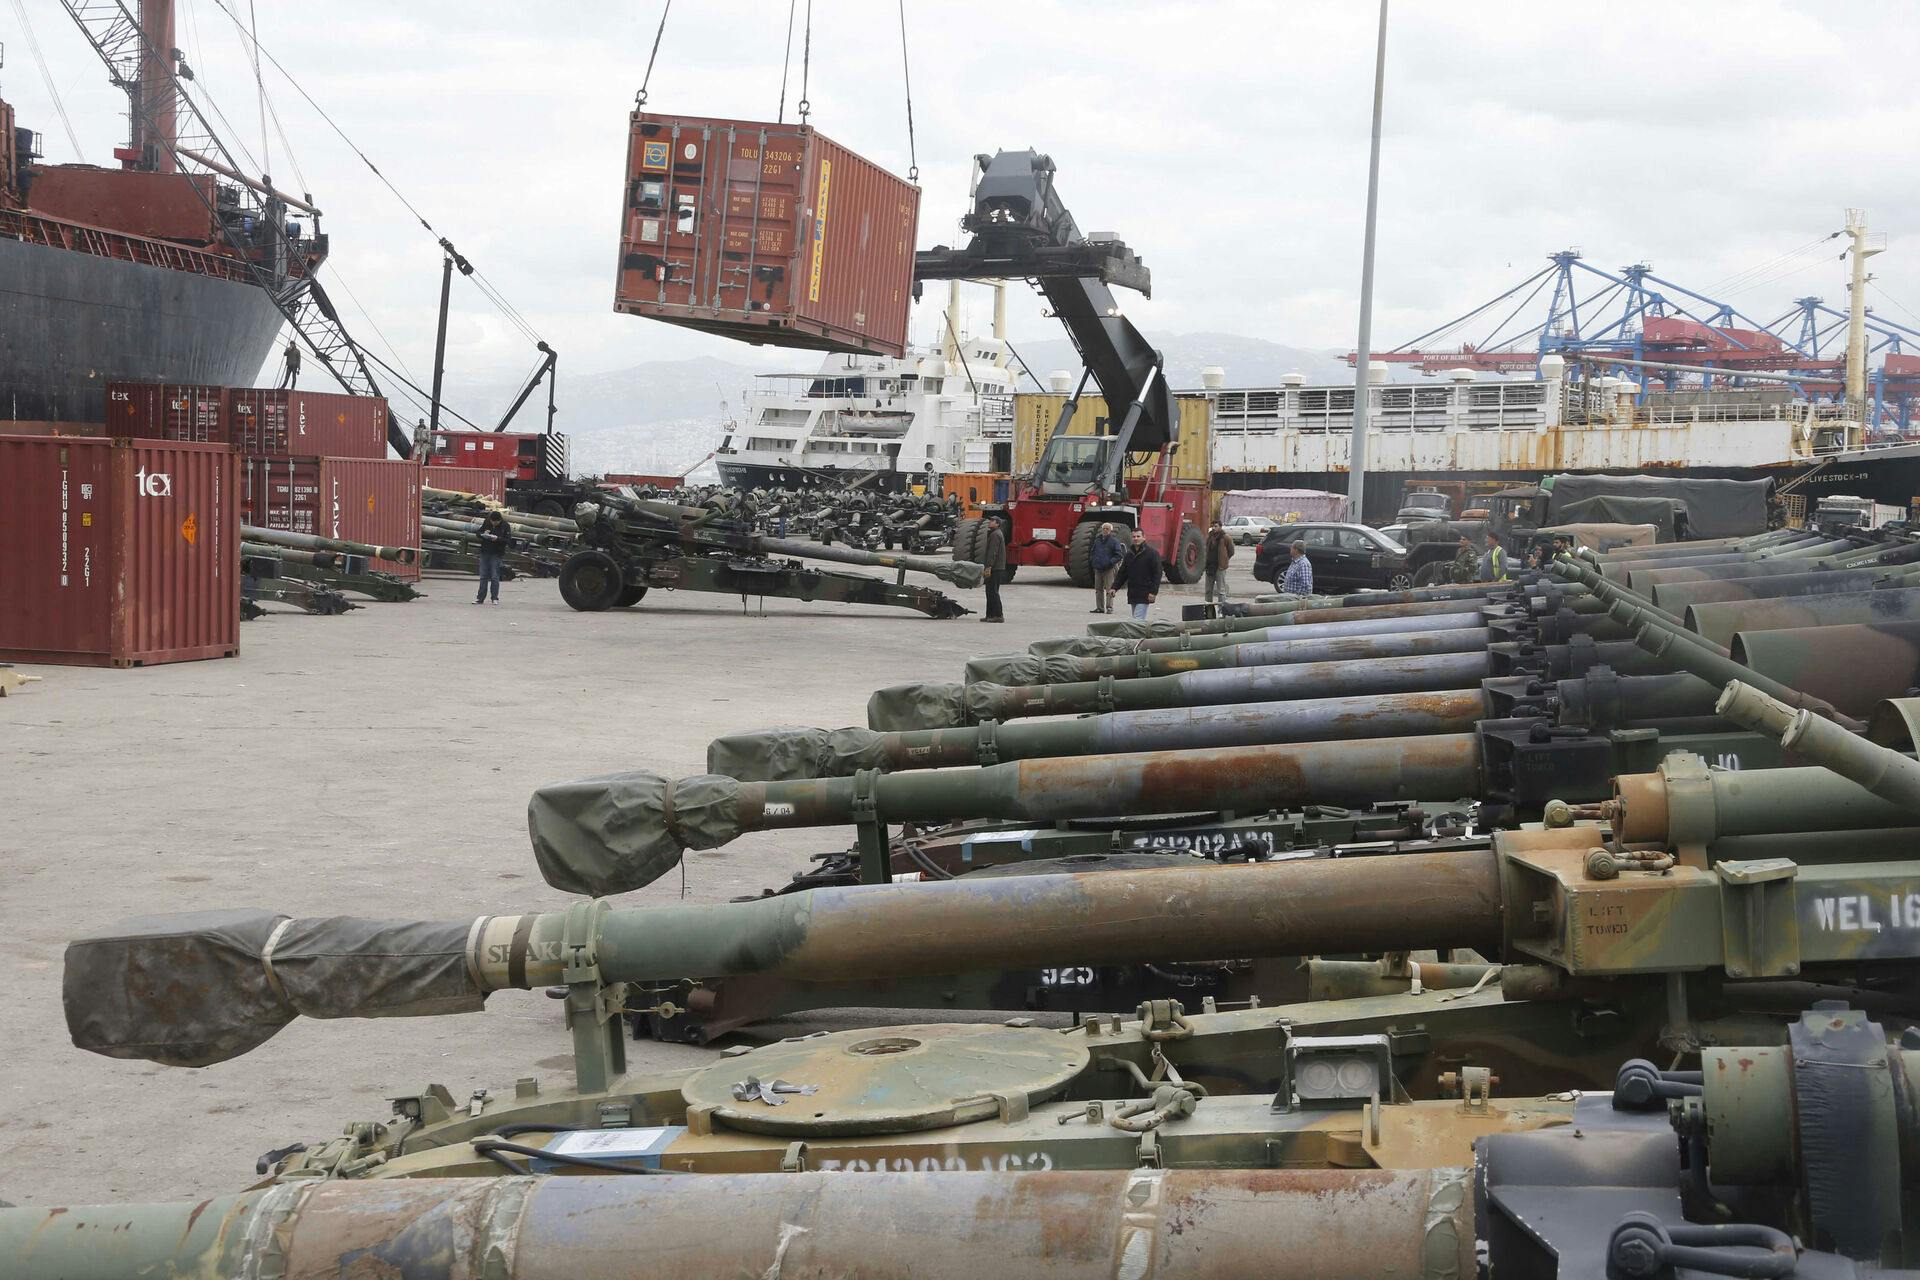 Det er tungt artilleri som dette, at ukrainerne har brug for ammunition til. Og det er dyrt - meget dyrt.